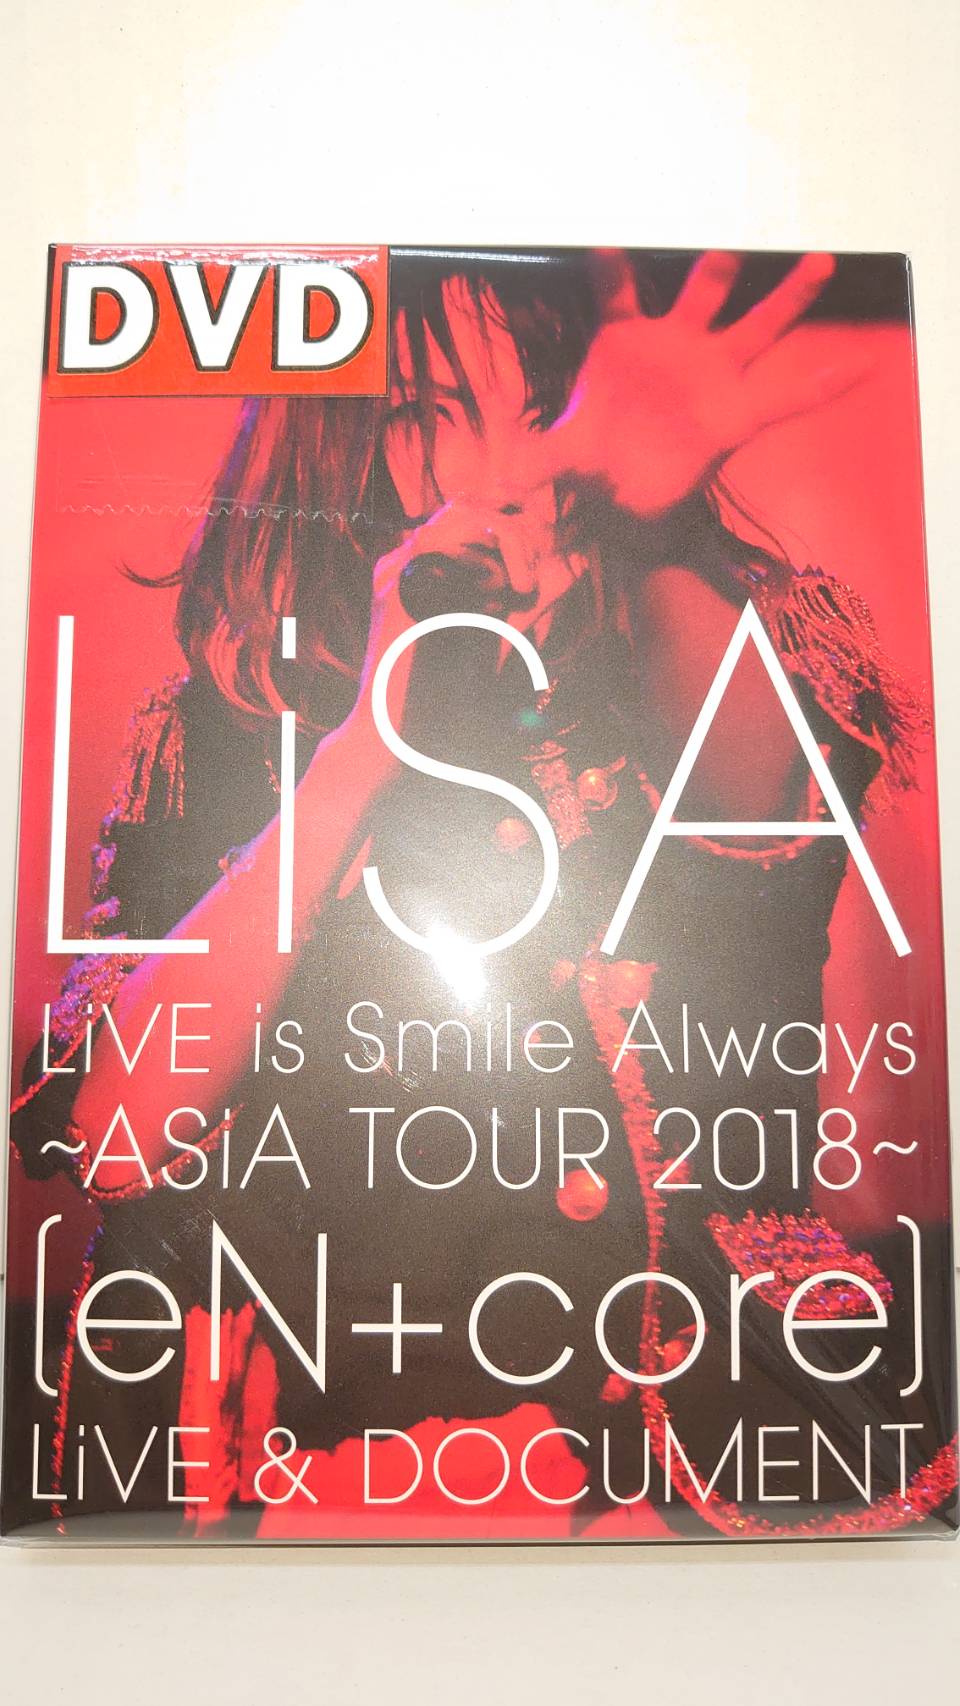 鹿児島店 Av 買取入荷 Lisa Live Is Smile Always Asia Tour 18 En Core Live Document Dvd マンガ倉庫 鹿児島店 加治木店 鹿屋店